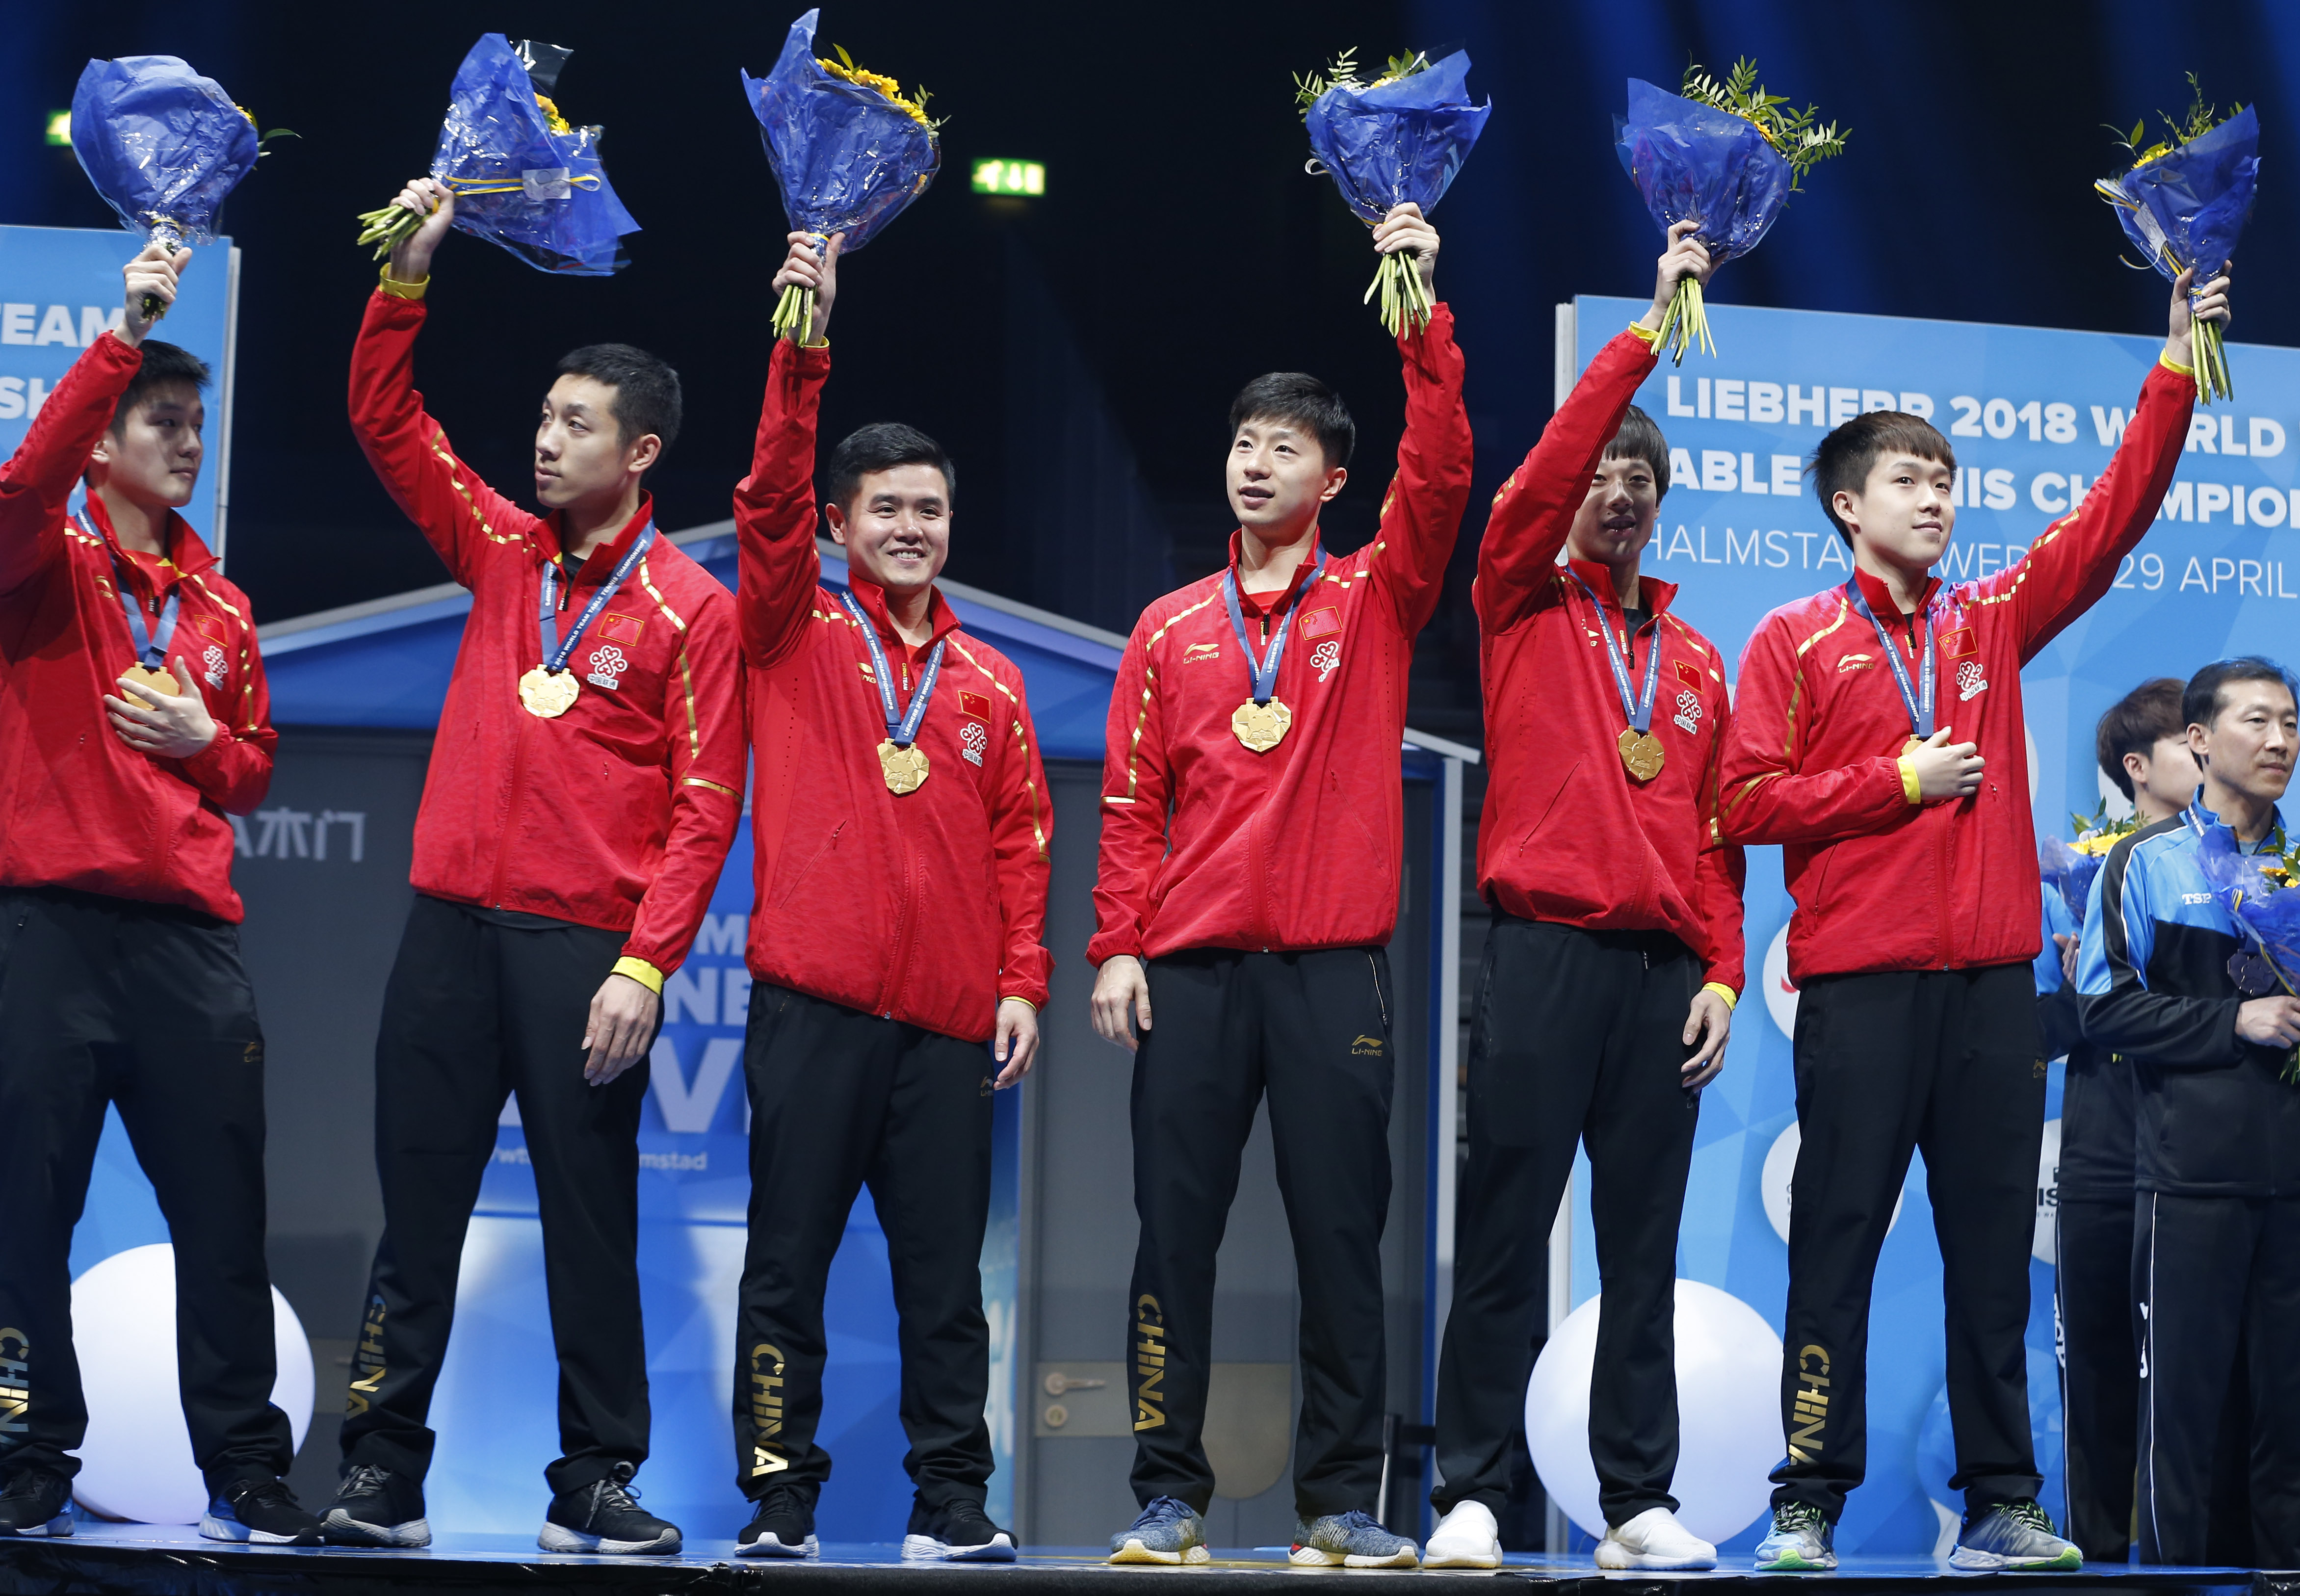 乒乓球团体锦标赛(决赛)男子决赛中,中国队以3比0战胜德国队,夺得冠军